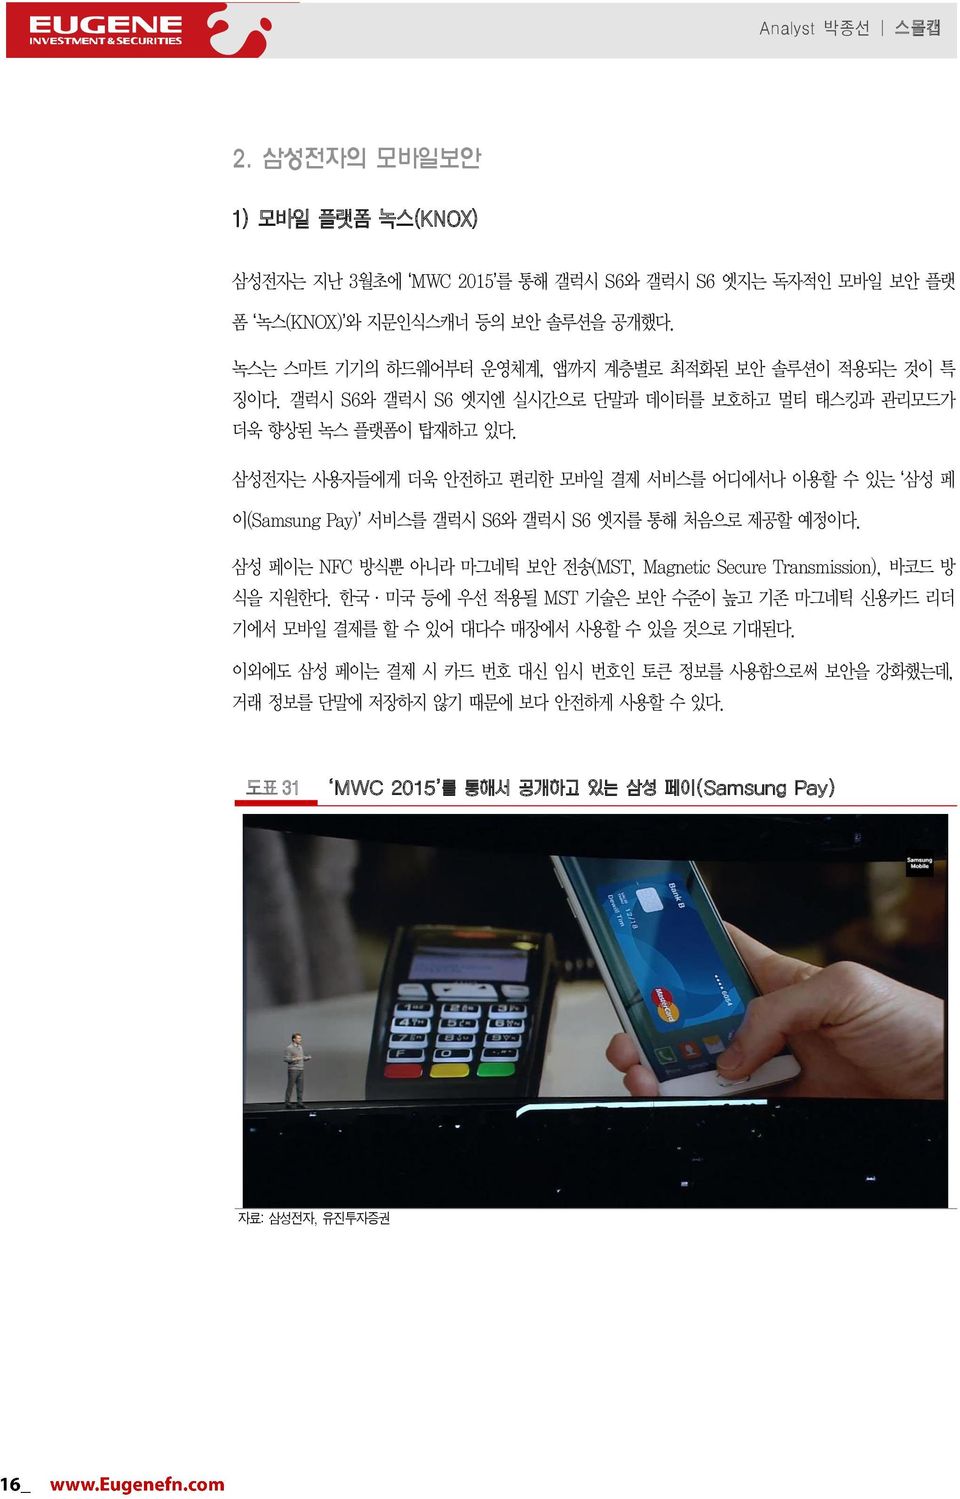 삼성전자는 사용자들에게 더욱 안전하고 편리한 모바일 결제 서비스를 어디에서나 이용할 수 있는 삼성 페 이(Samsung Pay) 서비스를 갤럭시 S6와 갤럭시 S6 엣지를 통해 처음으로 제공할 예정이다.